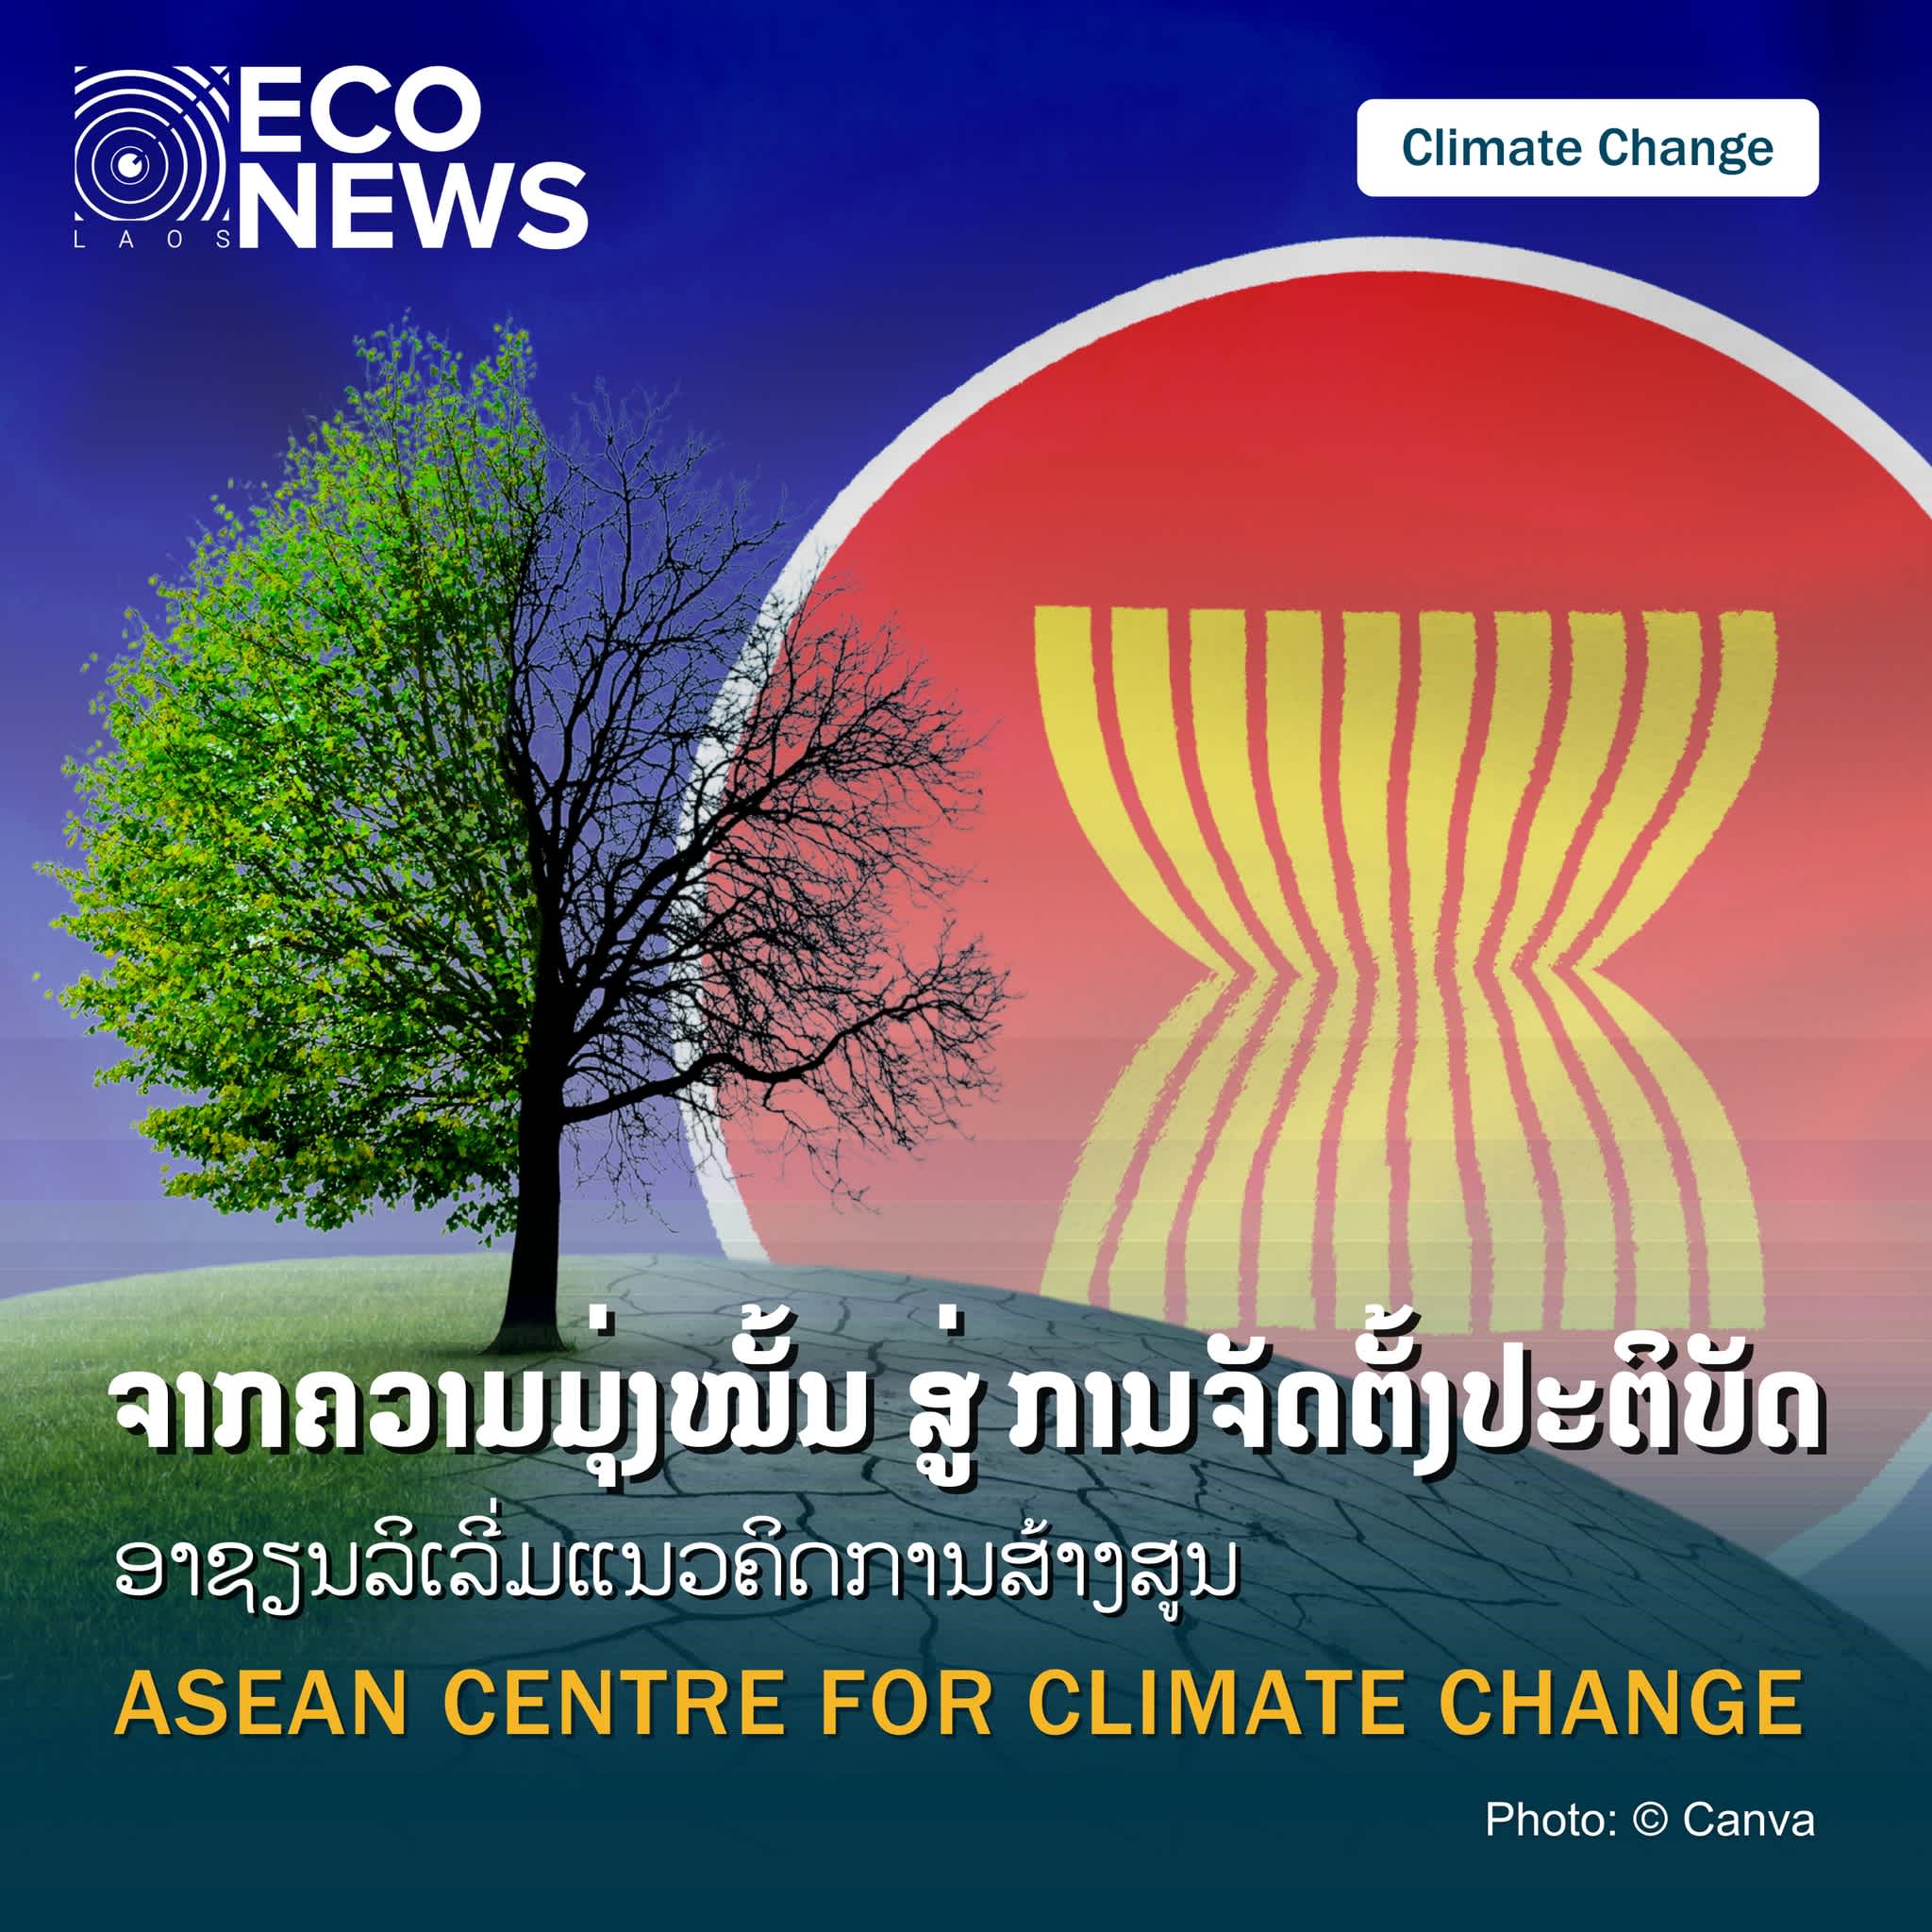 ຈາກຄວາມມຸ່ງໝັ້ນ ສູ່ ການຈັດຕັ້ງປະຕິບັດ ອາຊຽນລິເລີ່ມແນວຄິດການສ້າງສູນ ASEAN CENTRE FOR CLIMATE CHANGE